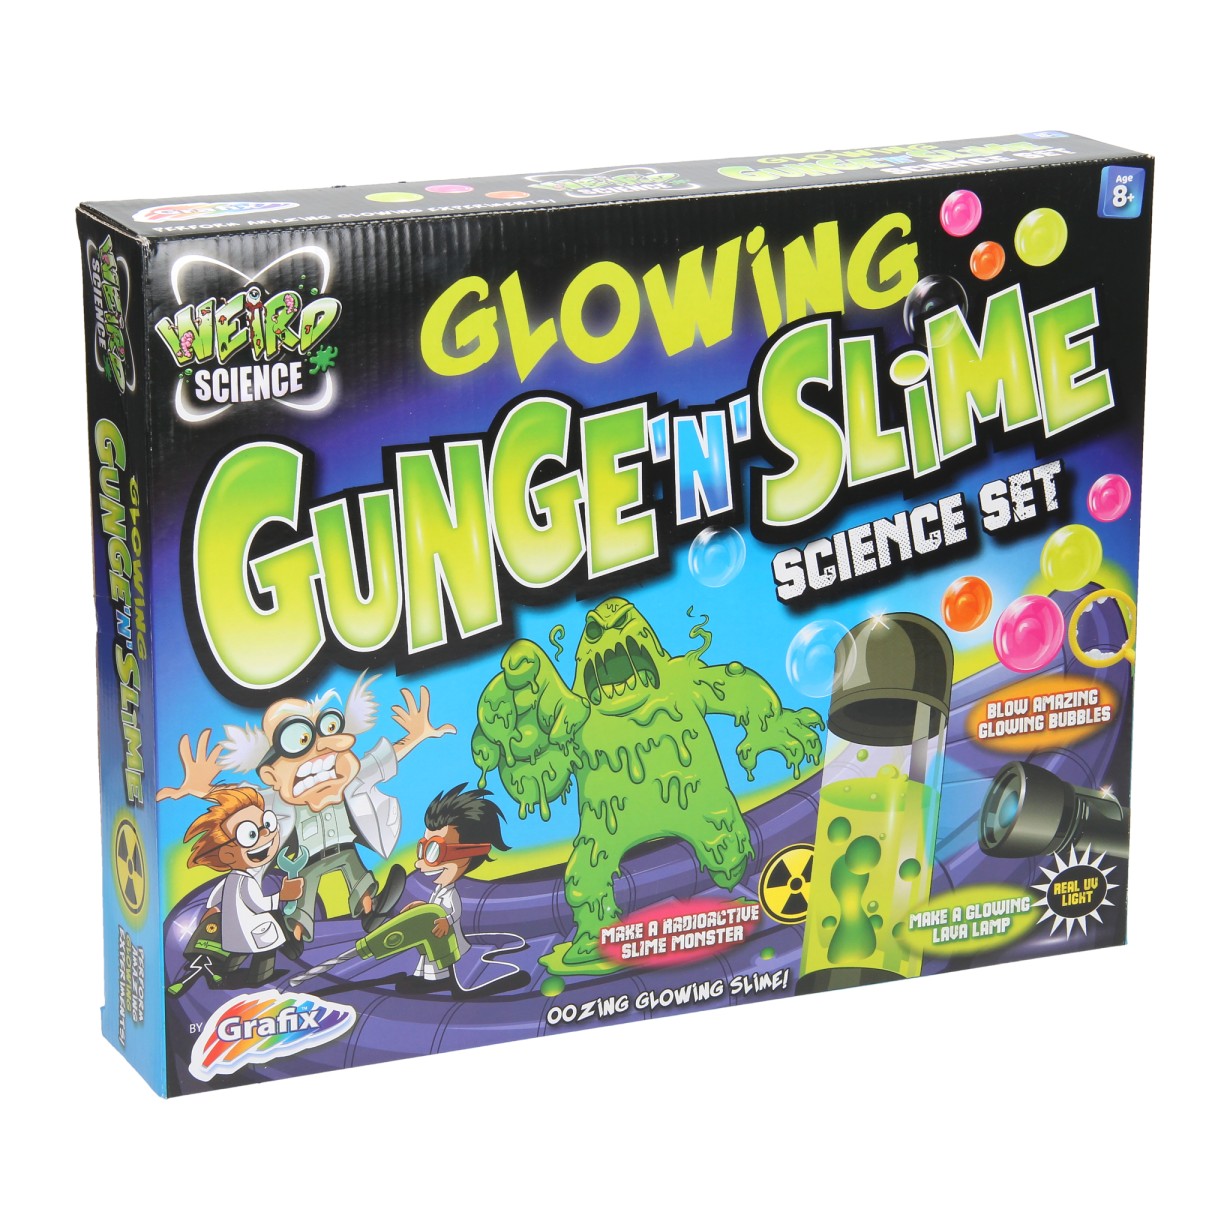 Weird Science - Glowing Gunge 'n' Slime